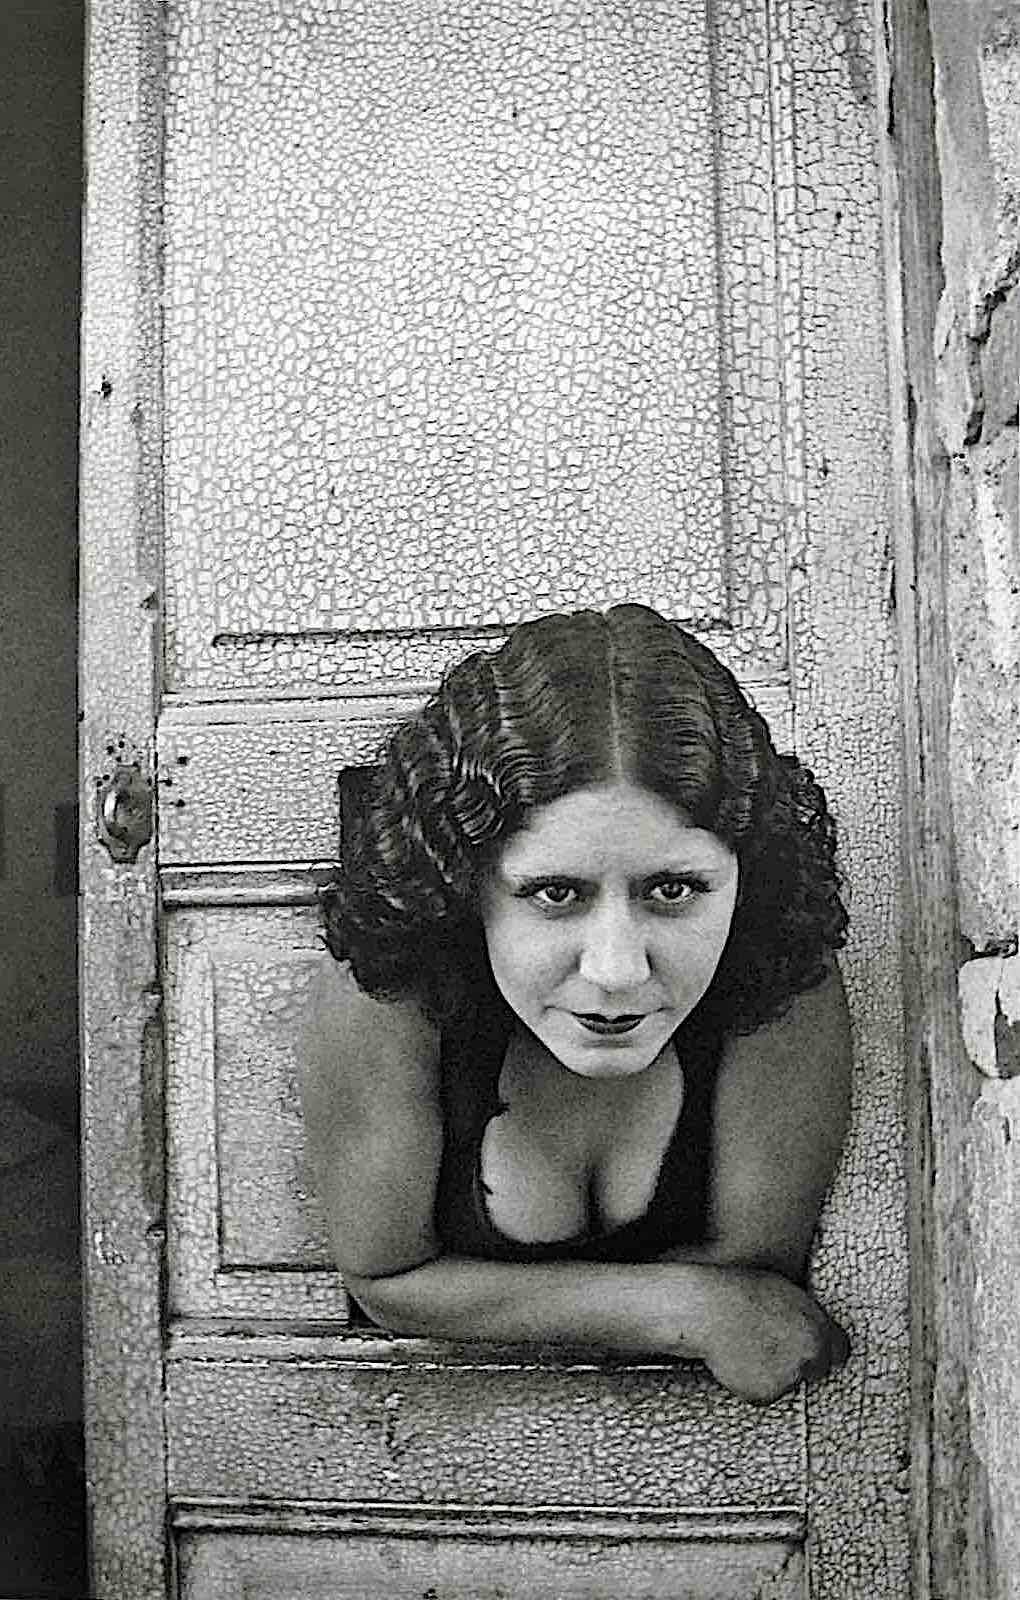 a Henri Cartier-Bresson photograph of a 1934 sexworker